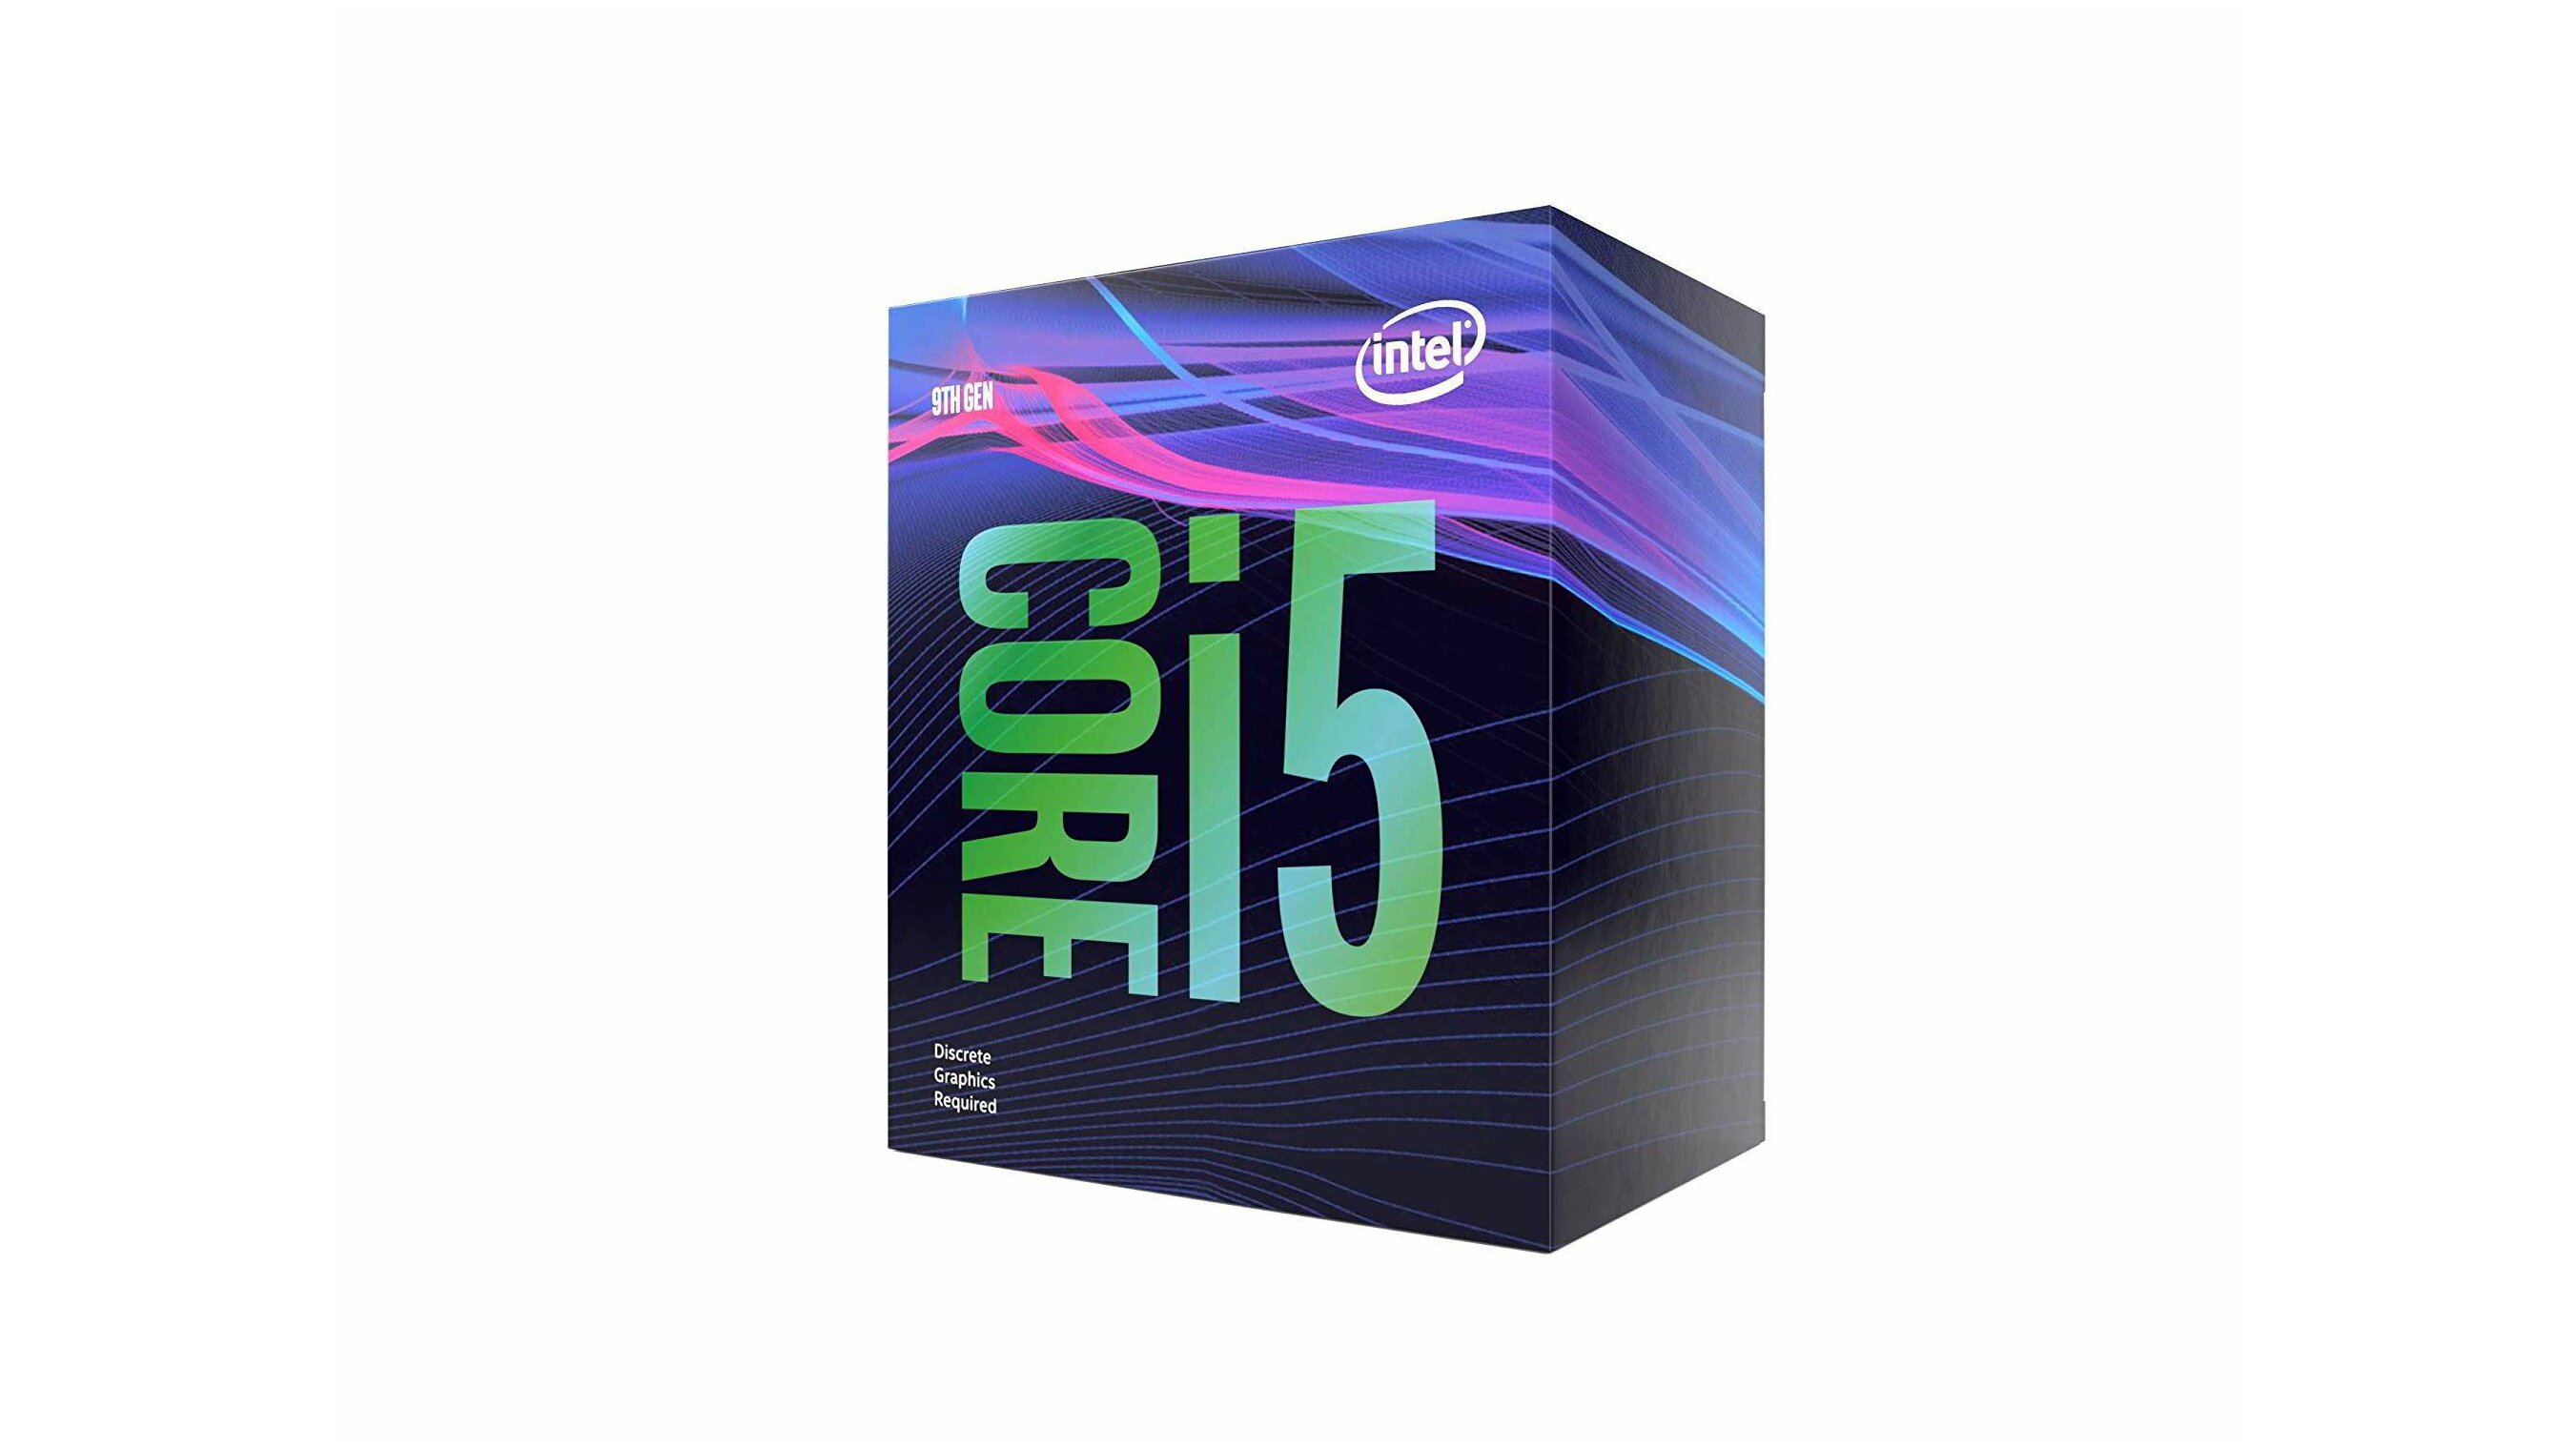 Интел 5 9400f. I5 9400f. Intel Core i5-9400f. Intel i5 9400f. I5 5400f.